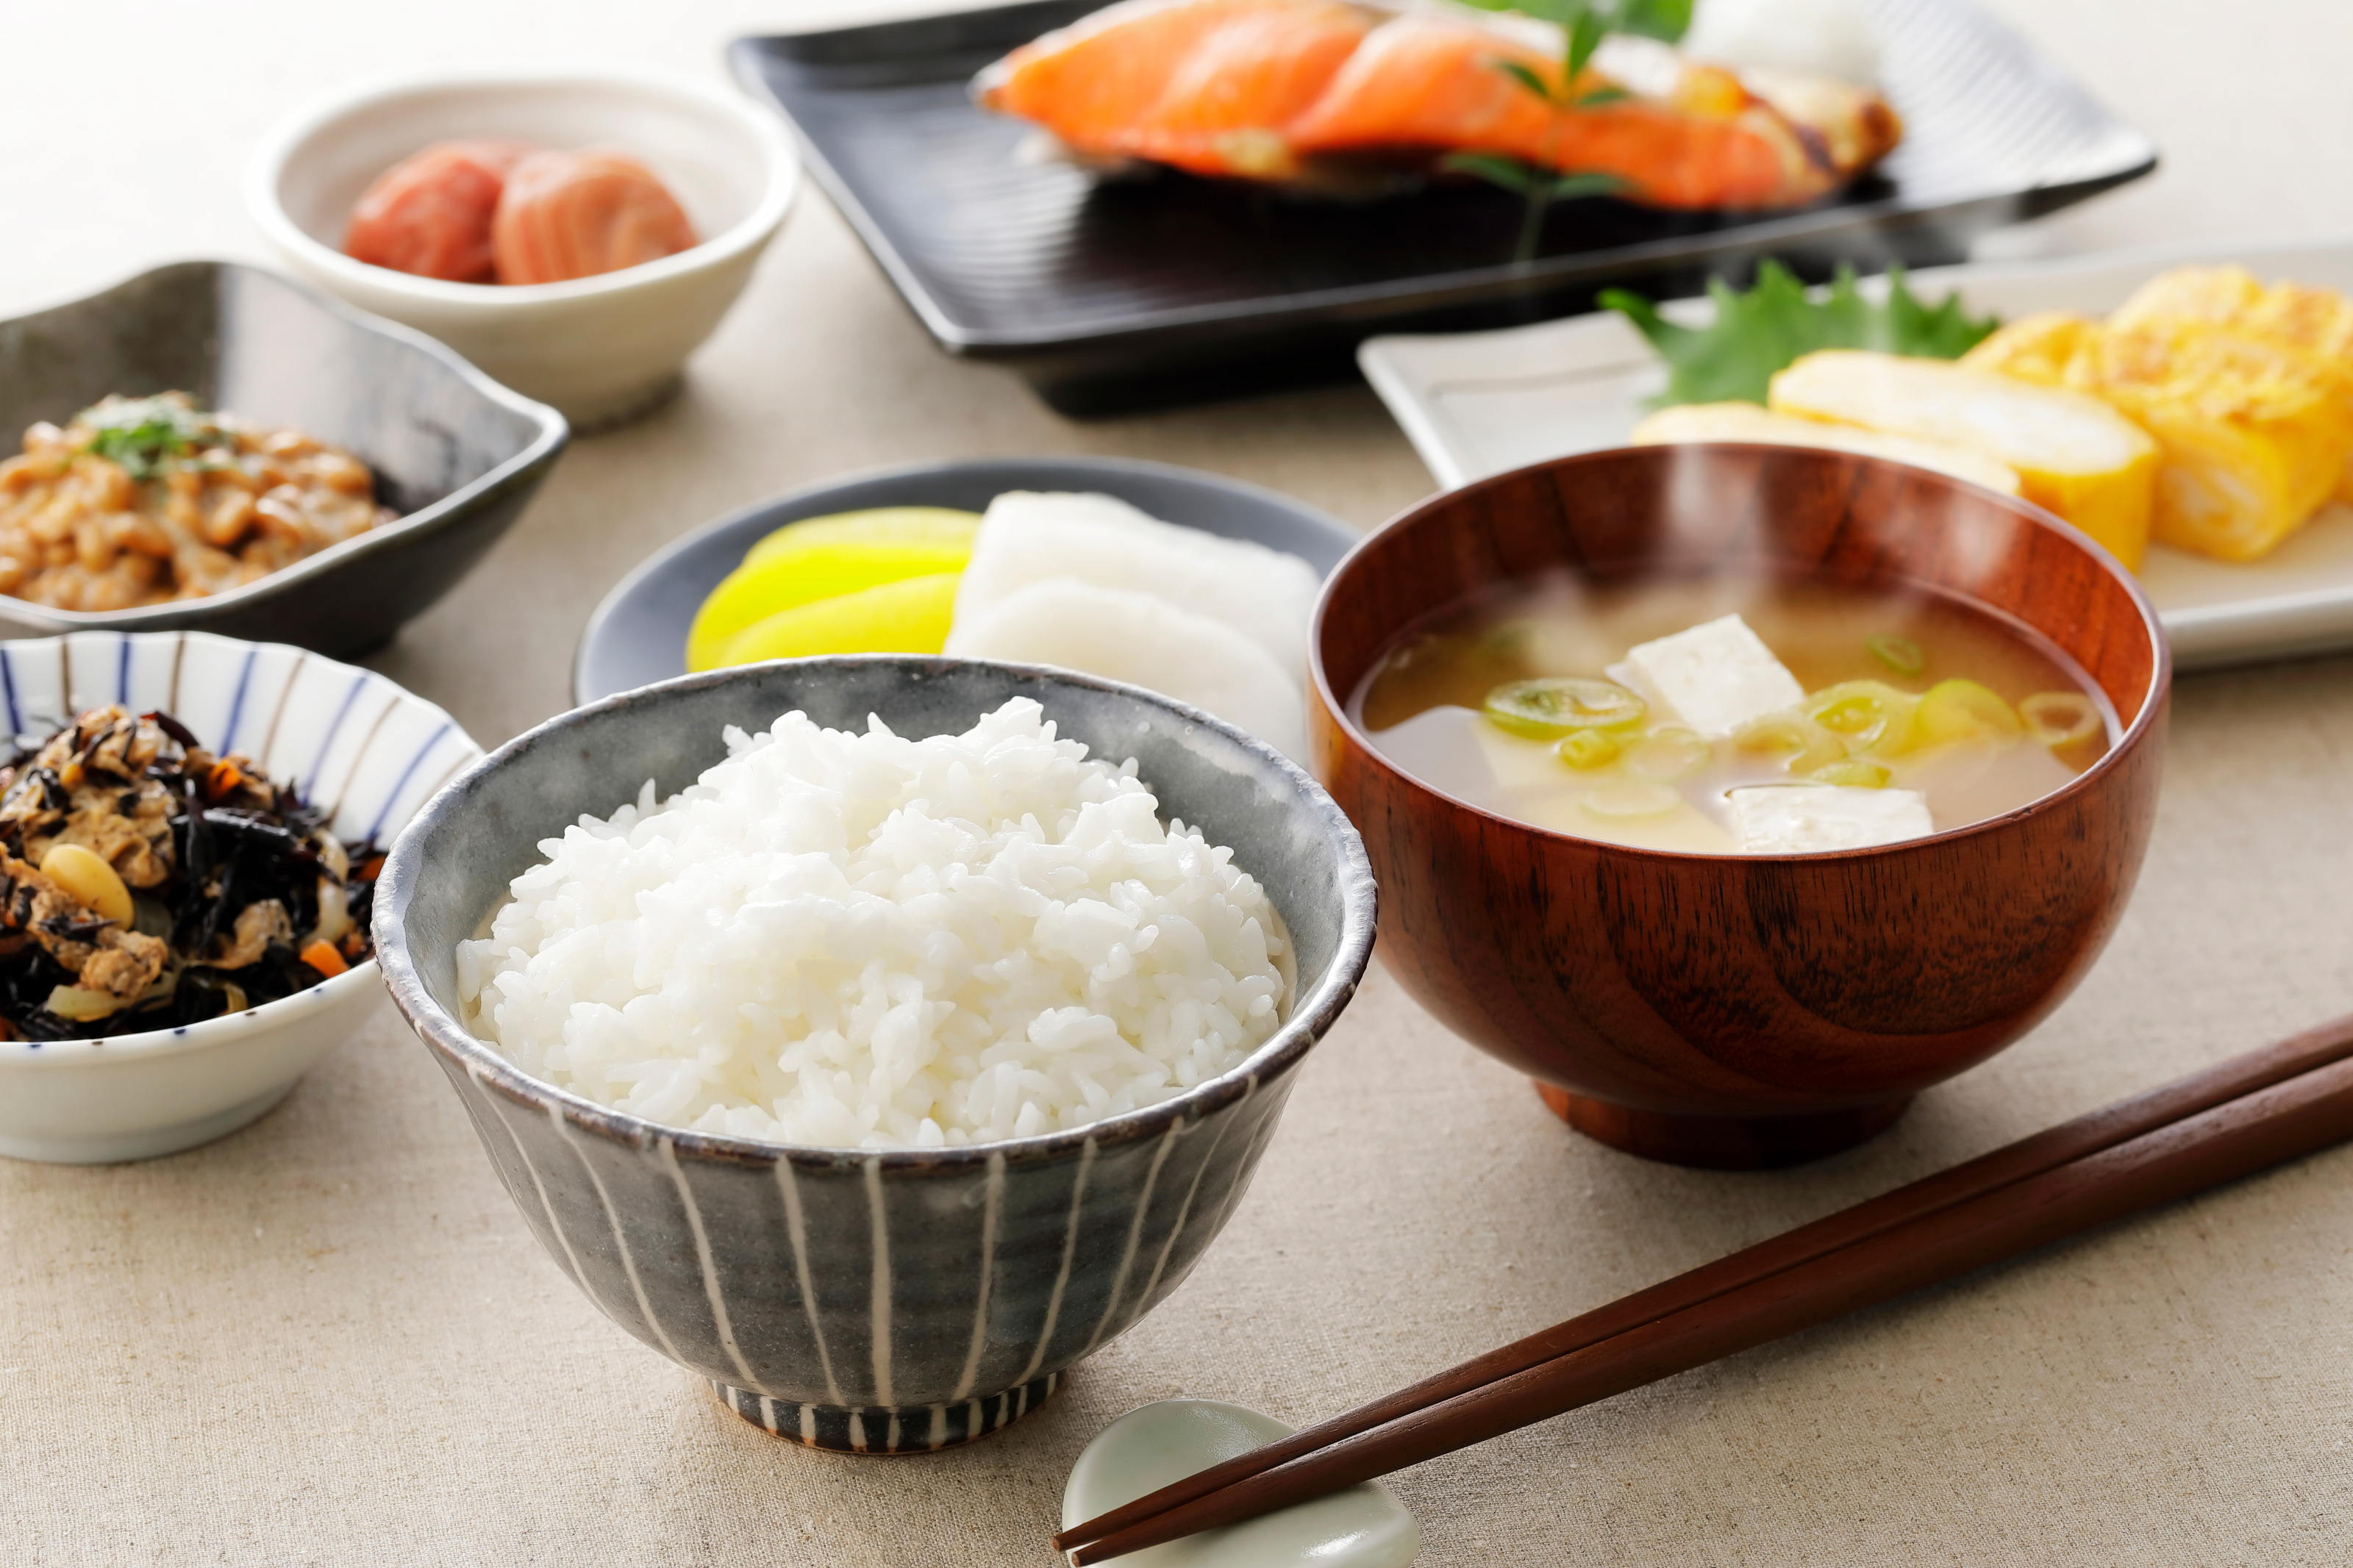 Verschiedene Schälchen und Teller gefüllt mit japanischen Frühstücksspeisen auf einem beigen Untergrund, daneben Stäbchen